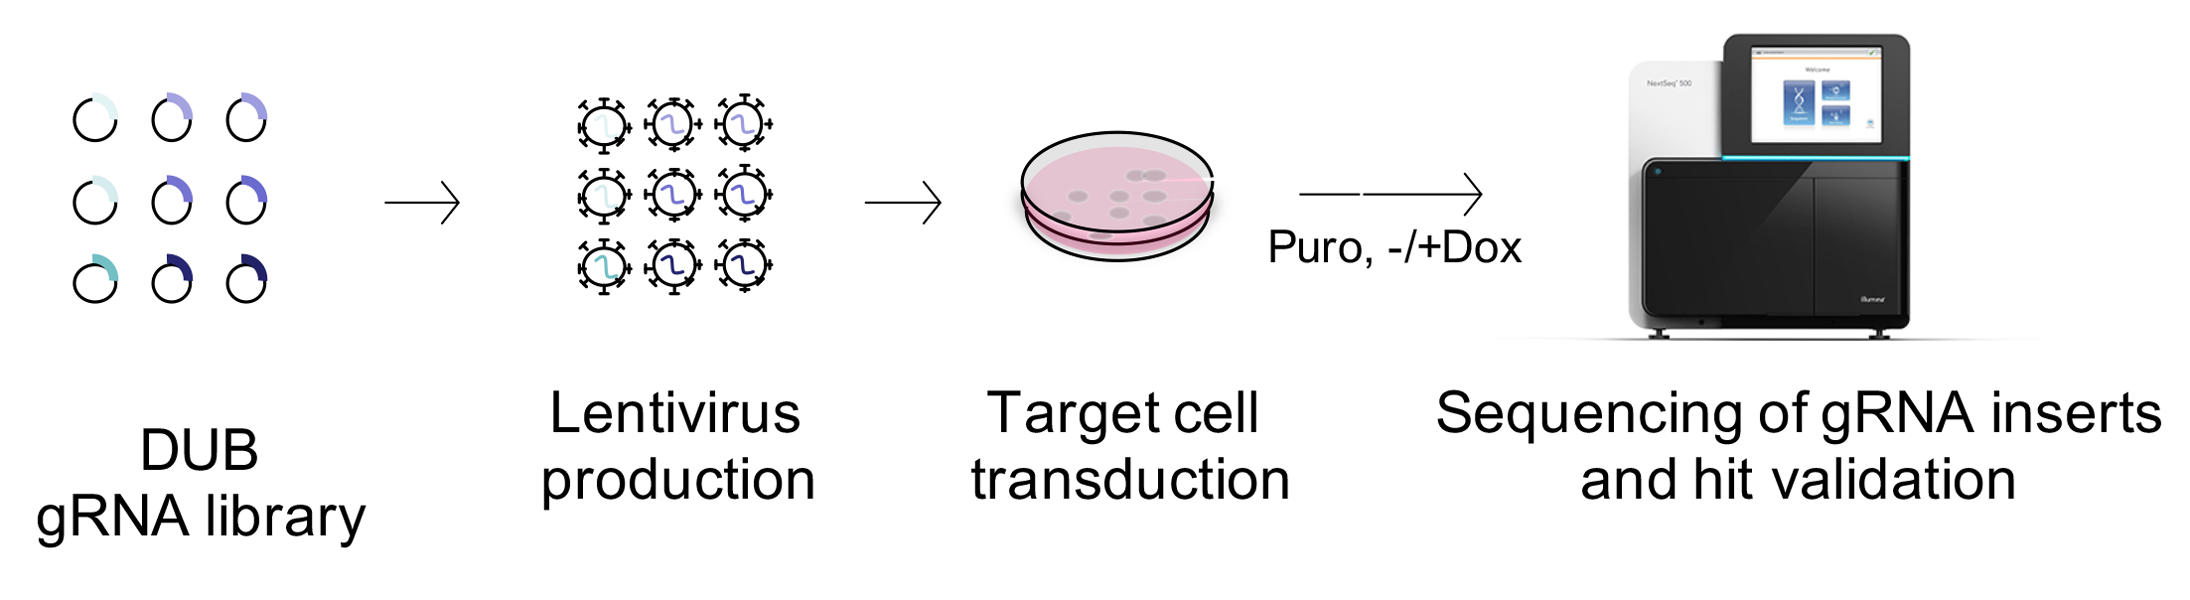 Schaubild zur Proteinhomöostase